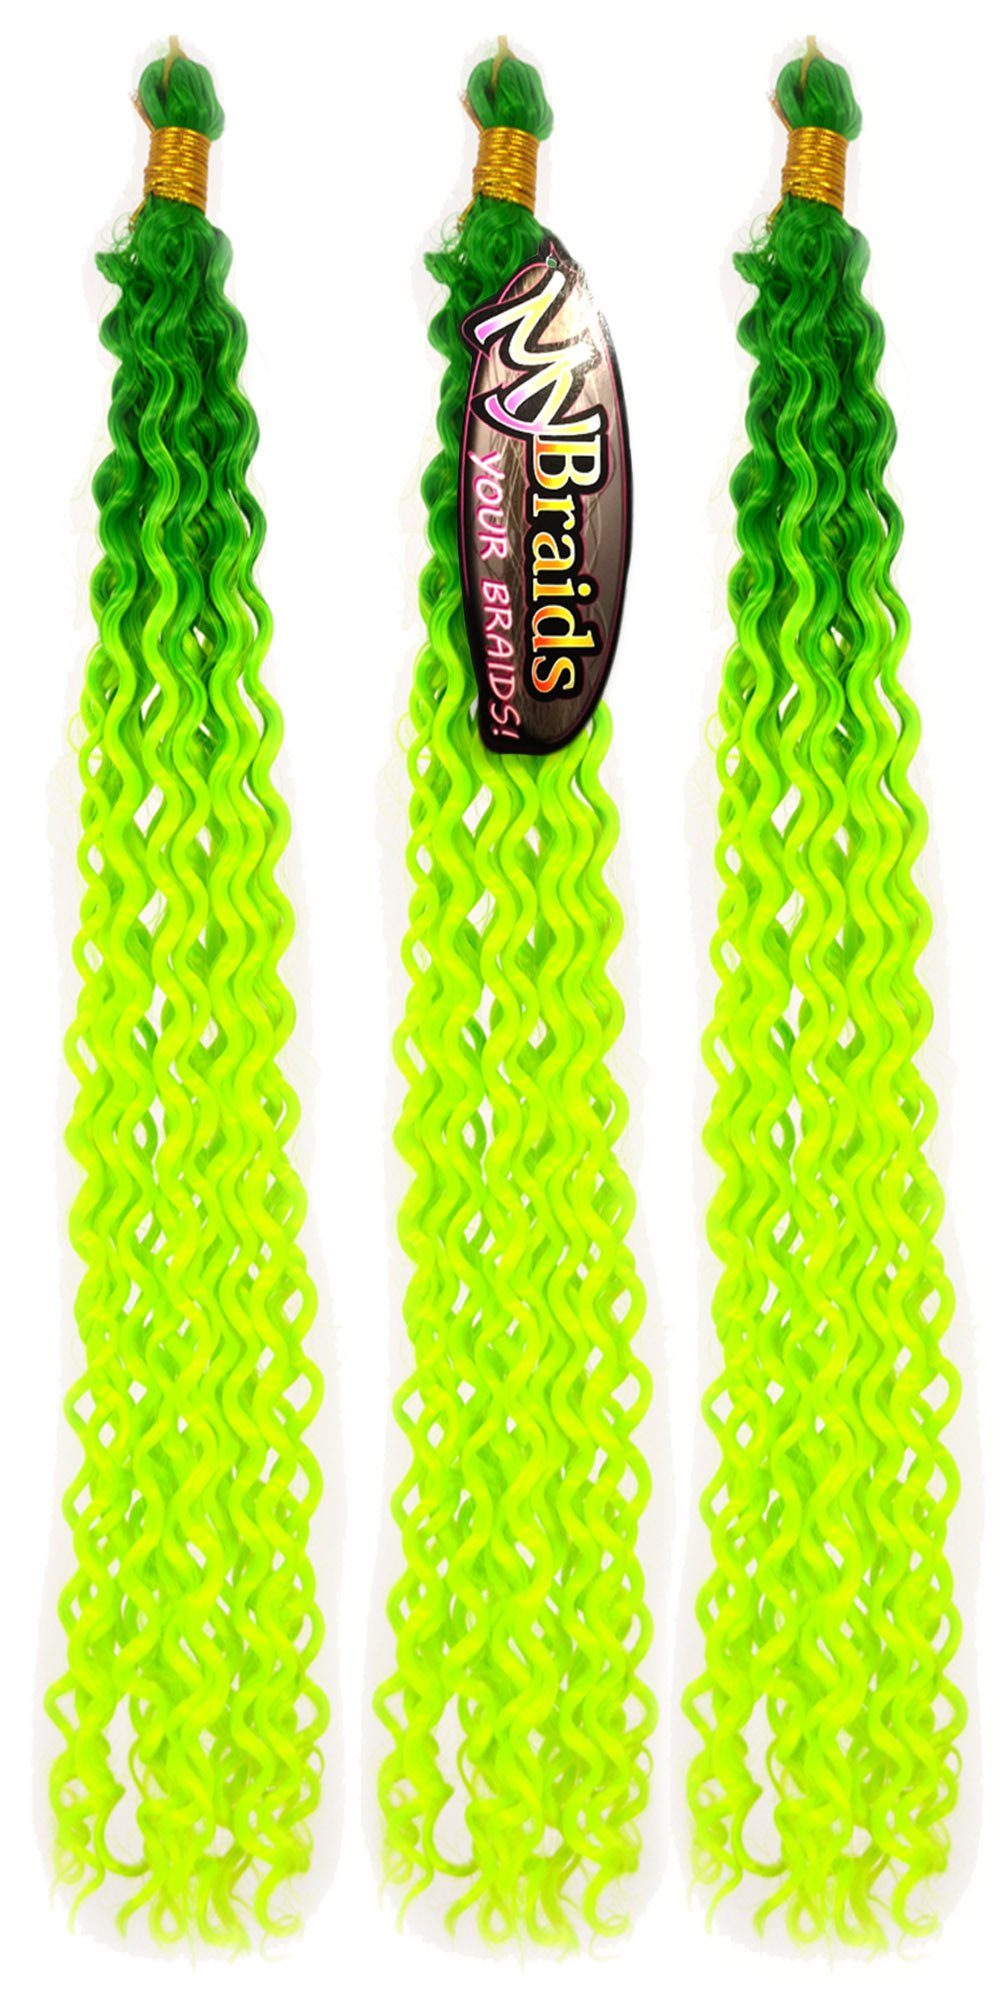 MyBraids YOUR BRAIDS! Kunsthaar-Extension Deep Wave Crochet Braids 3er Pack Flechthaar Ombre Zöpfe Wellig 14-WS Saftgrün-Neongelb